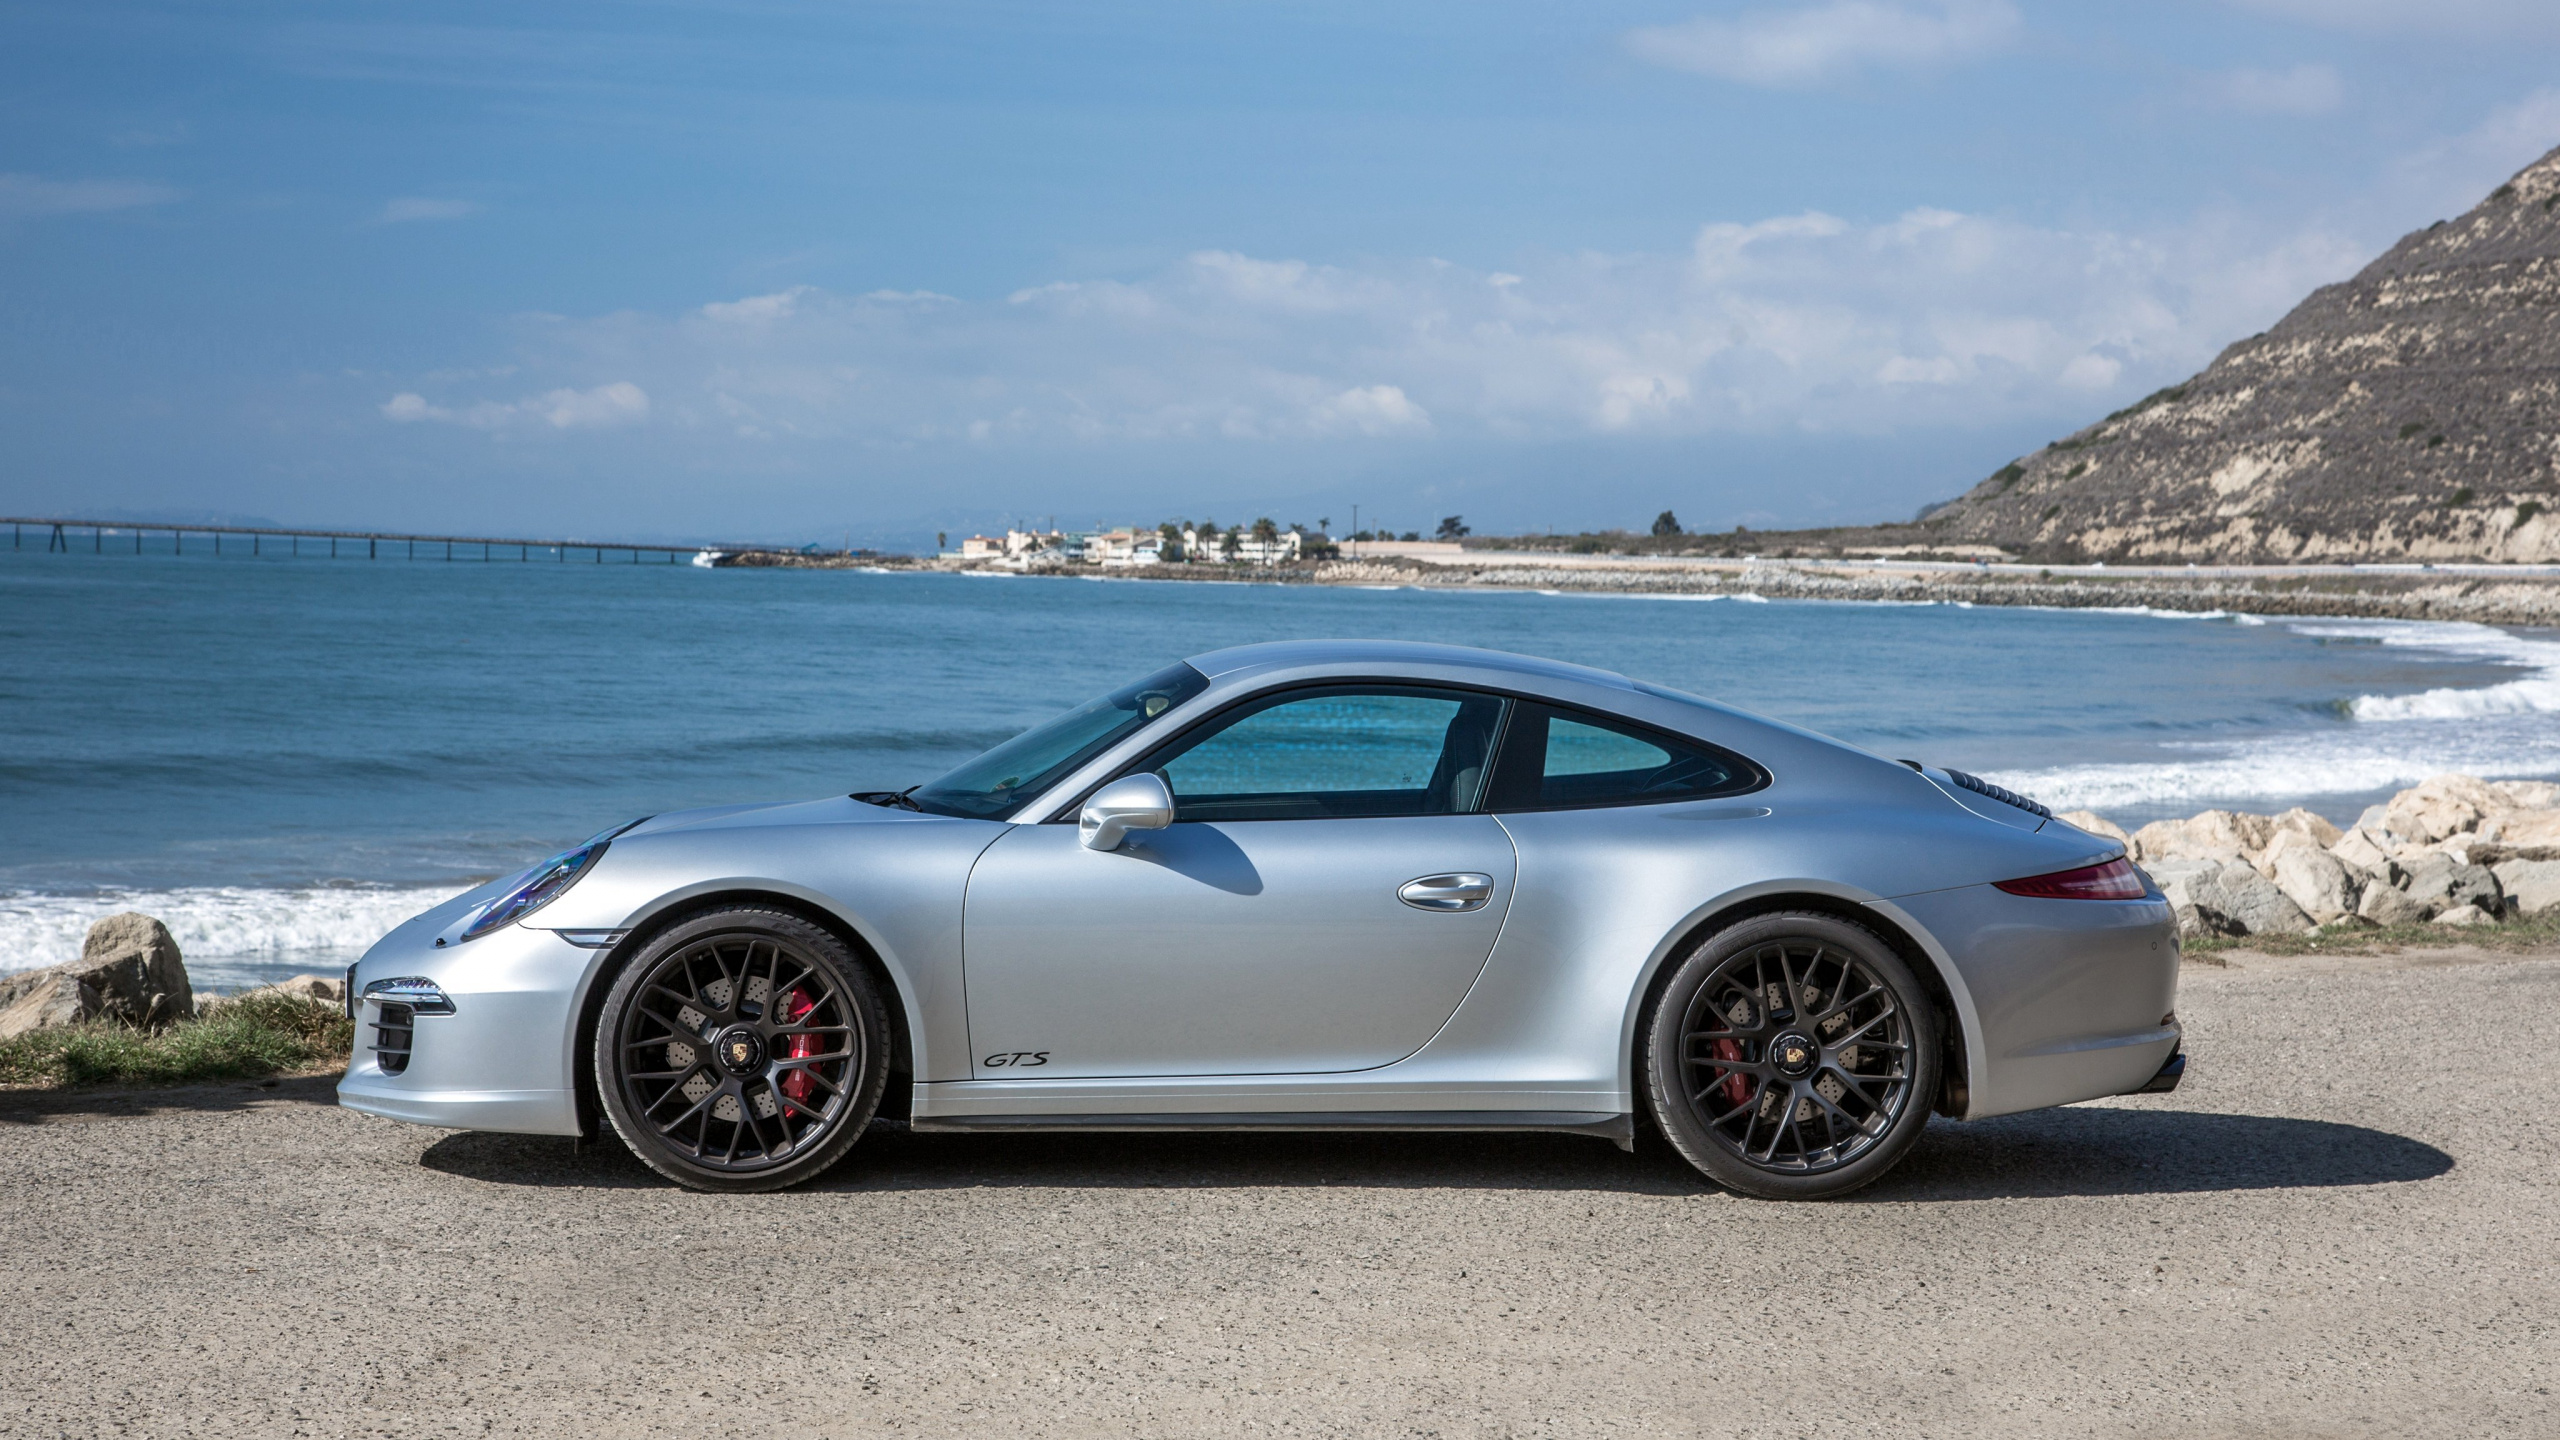 Silberner Porsche 911 Tagsüber am Meer Geparkt. Wallpaper in 2560x1440 Resolution